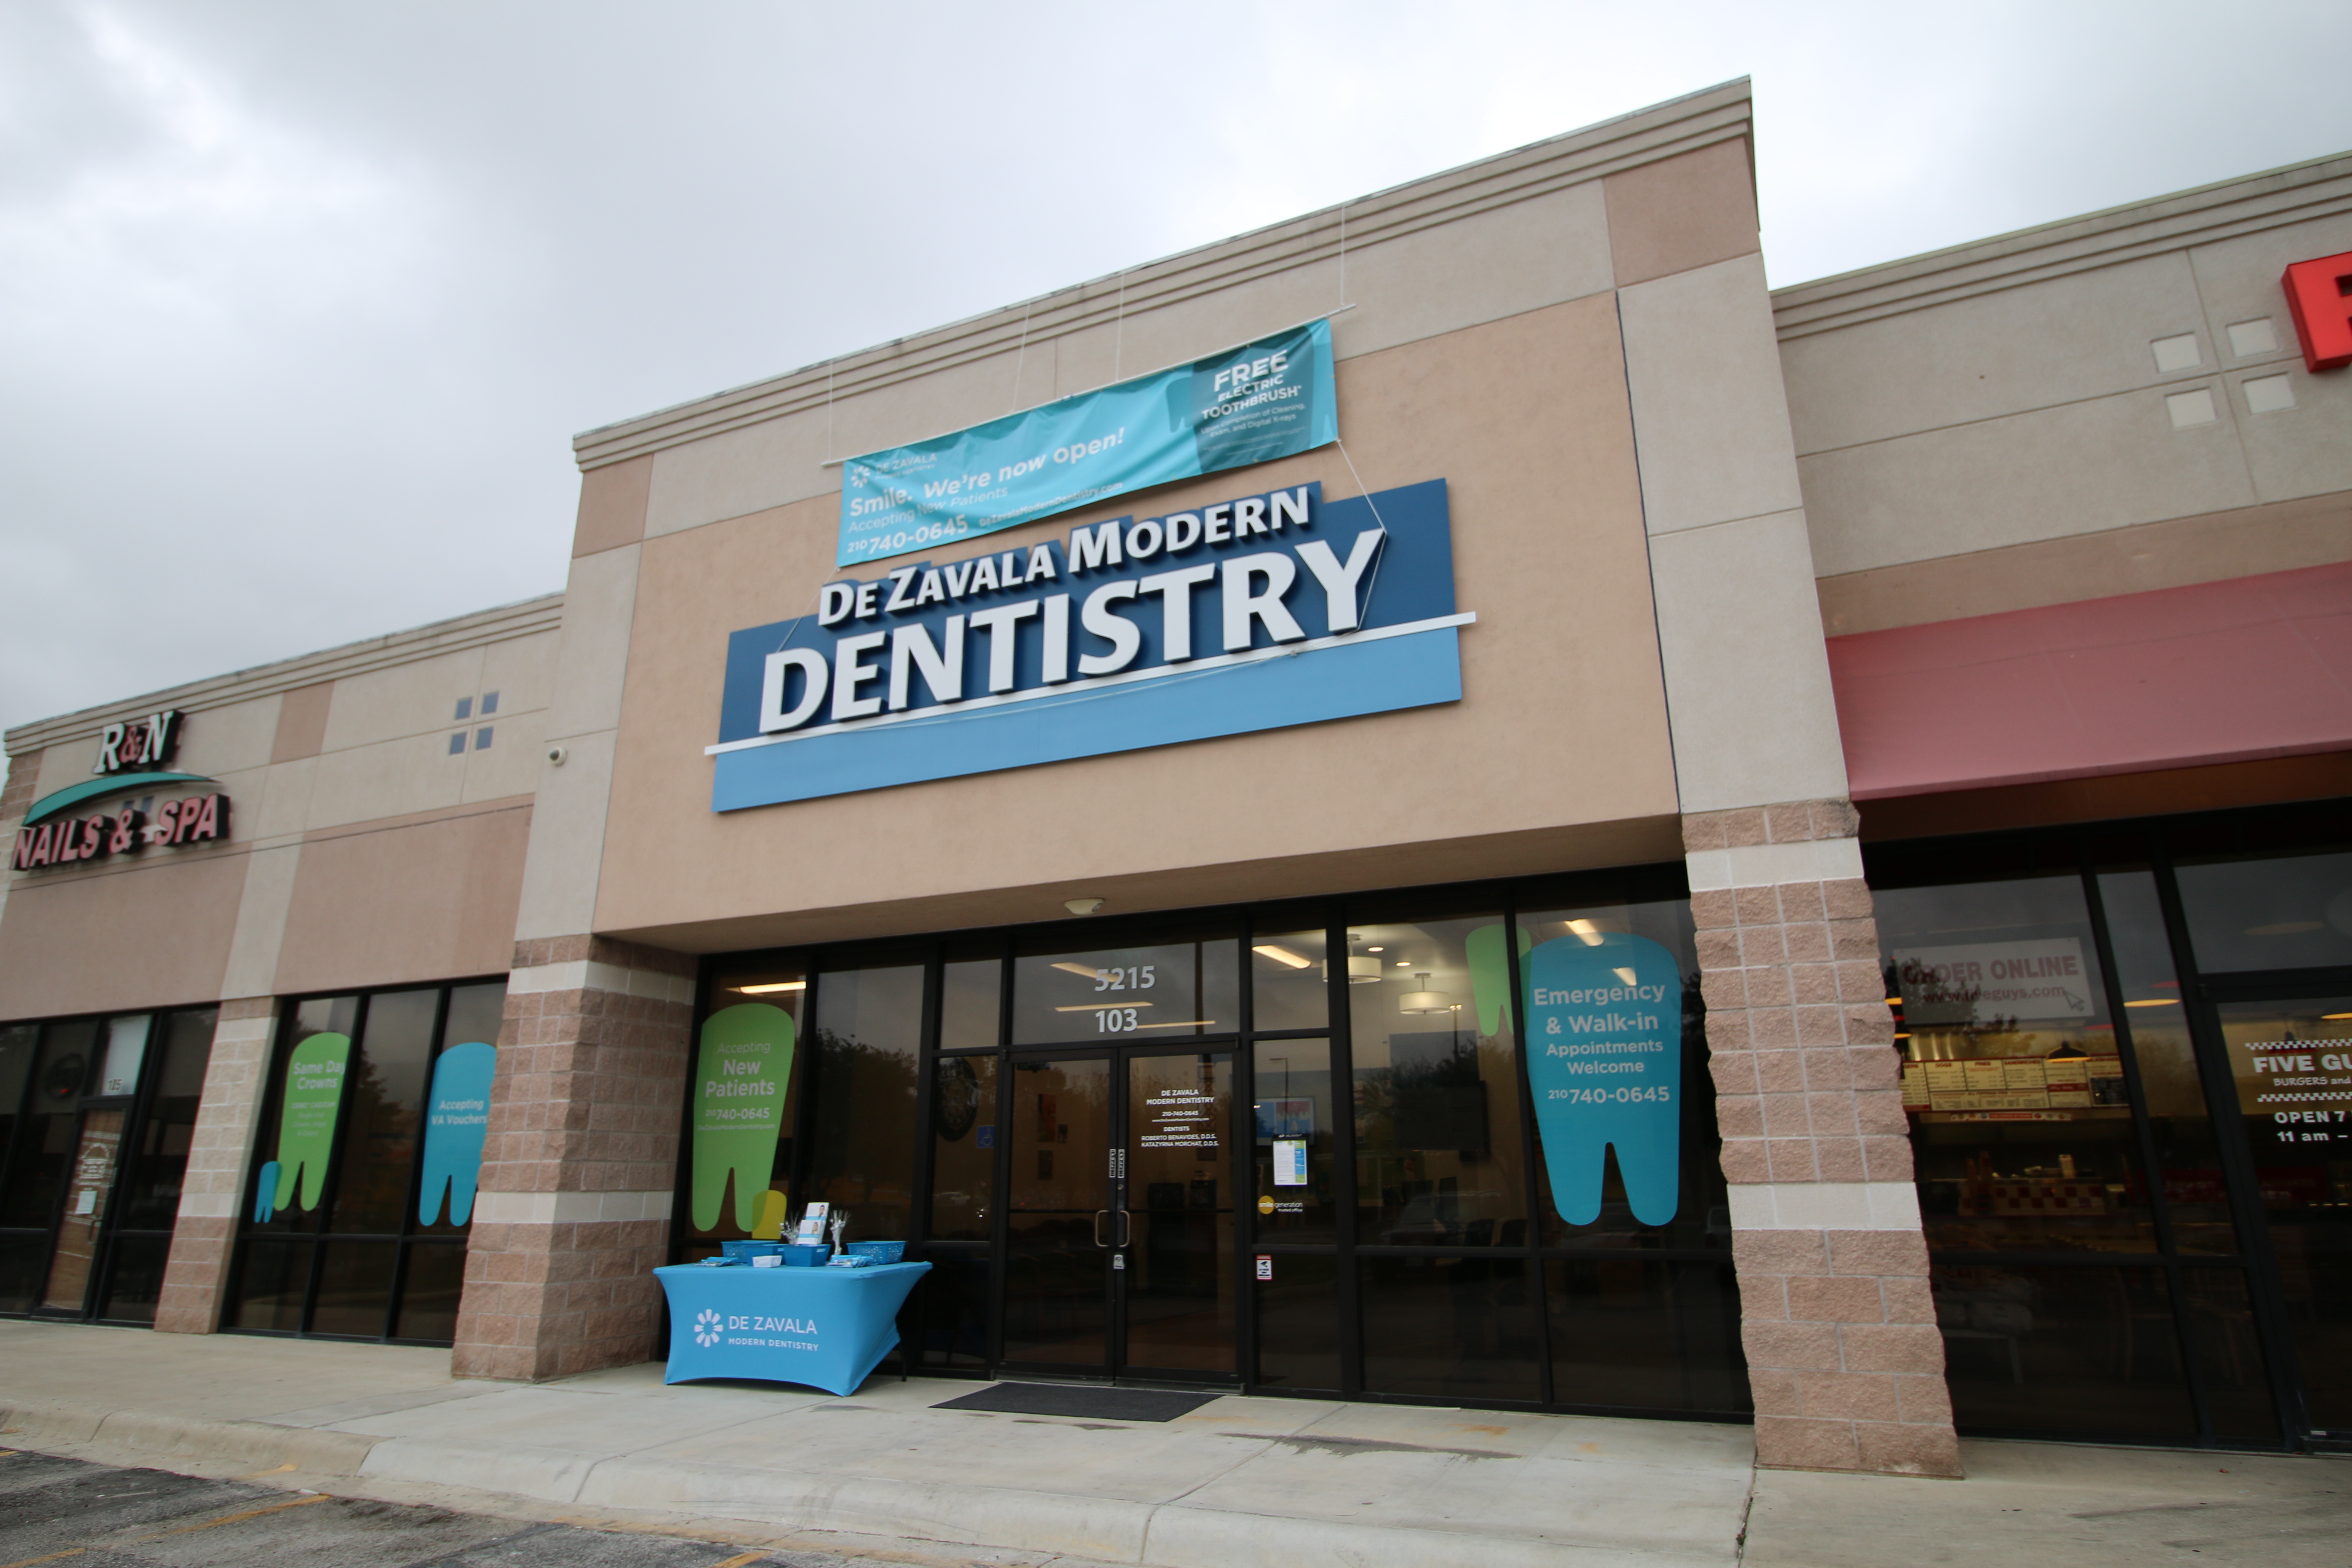 De Zavala Modern Dentistry San Antonio (210)740-0645